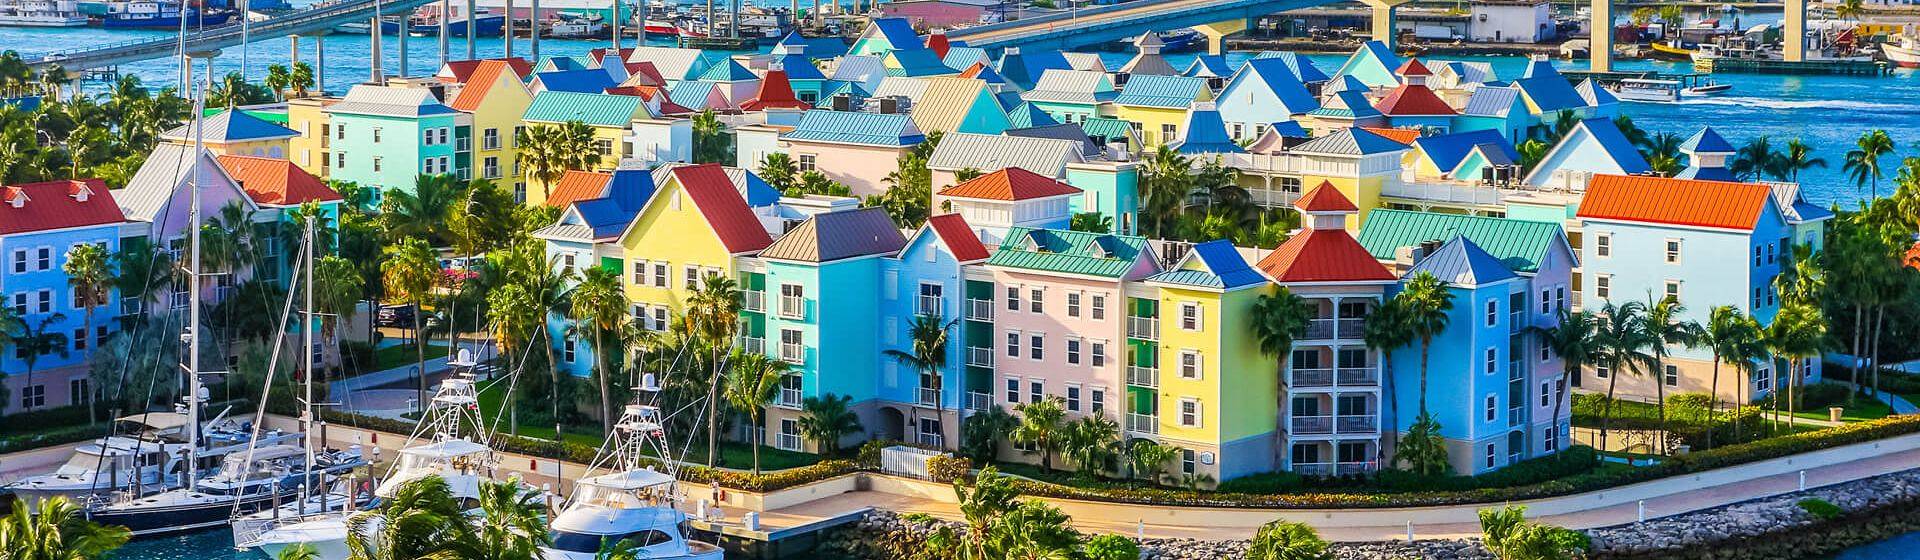 Holidays to Bahamas Image